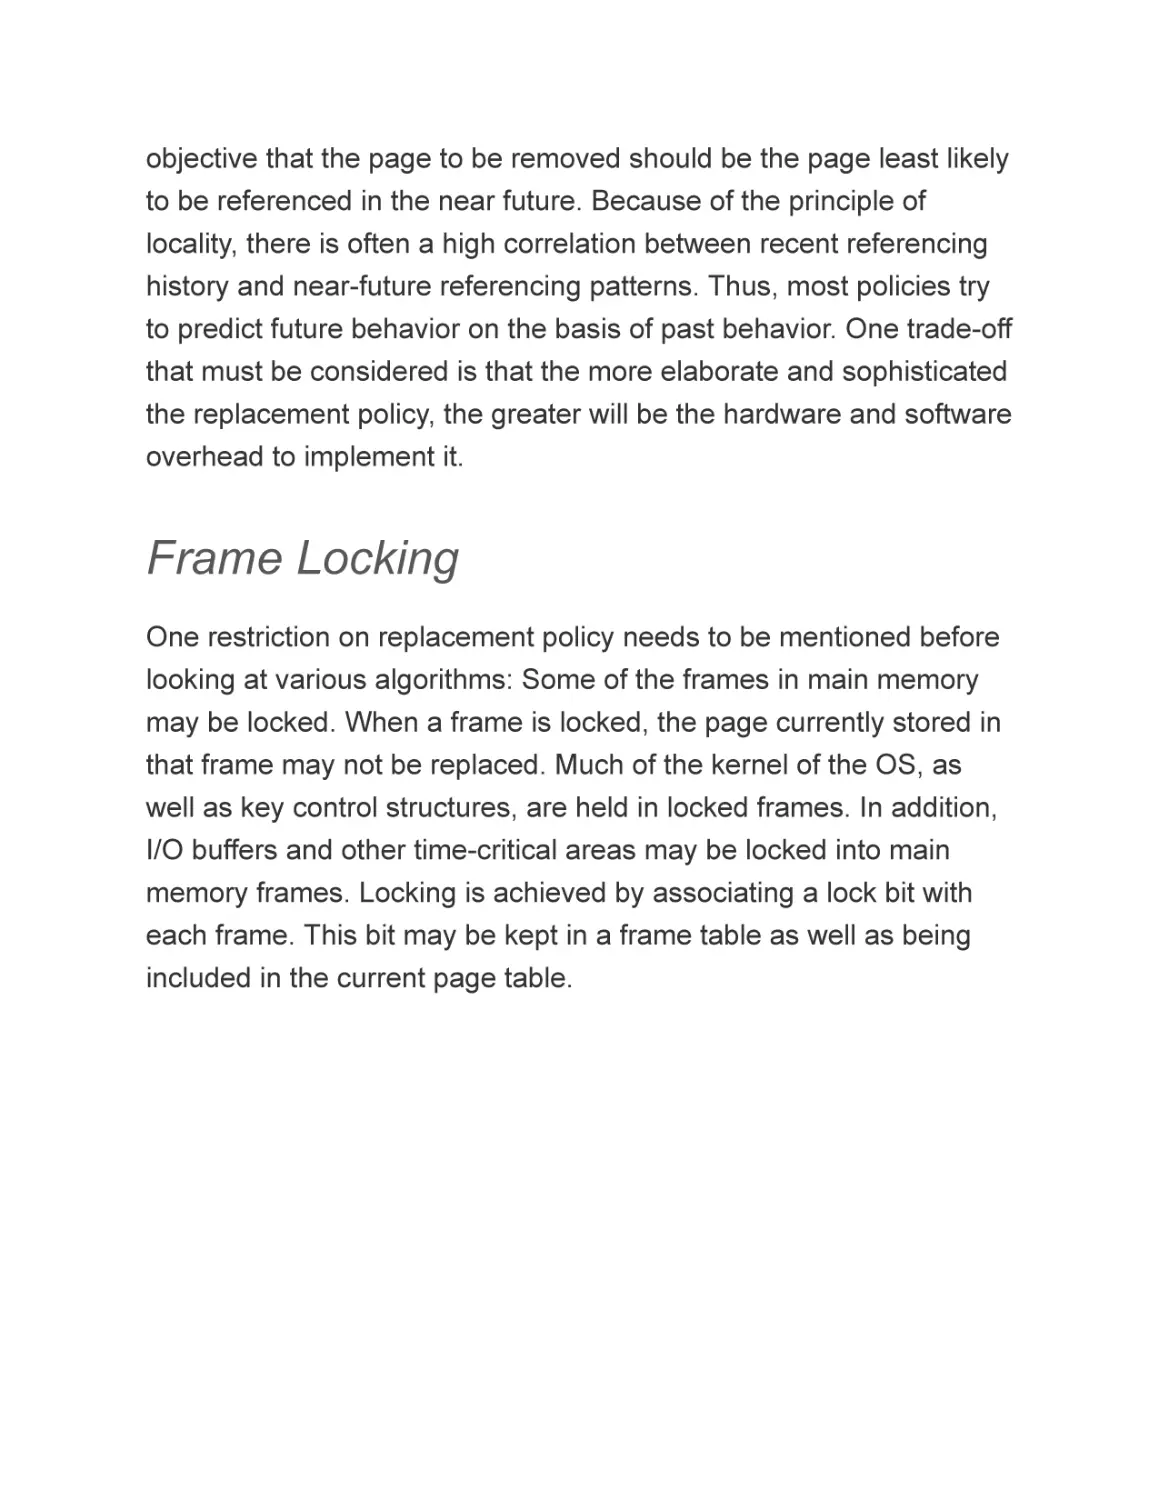 Frame Locking